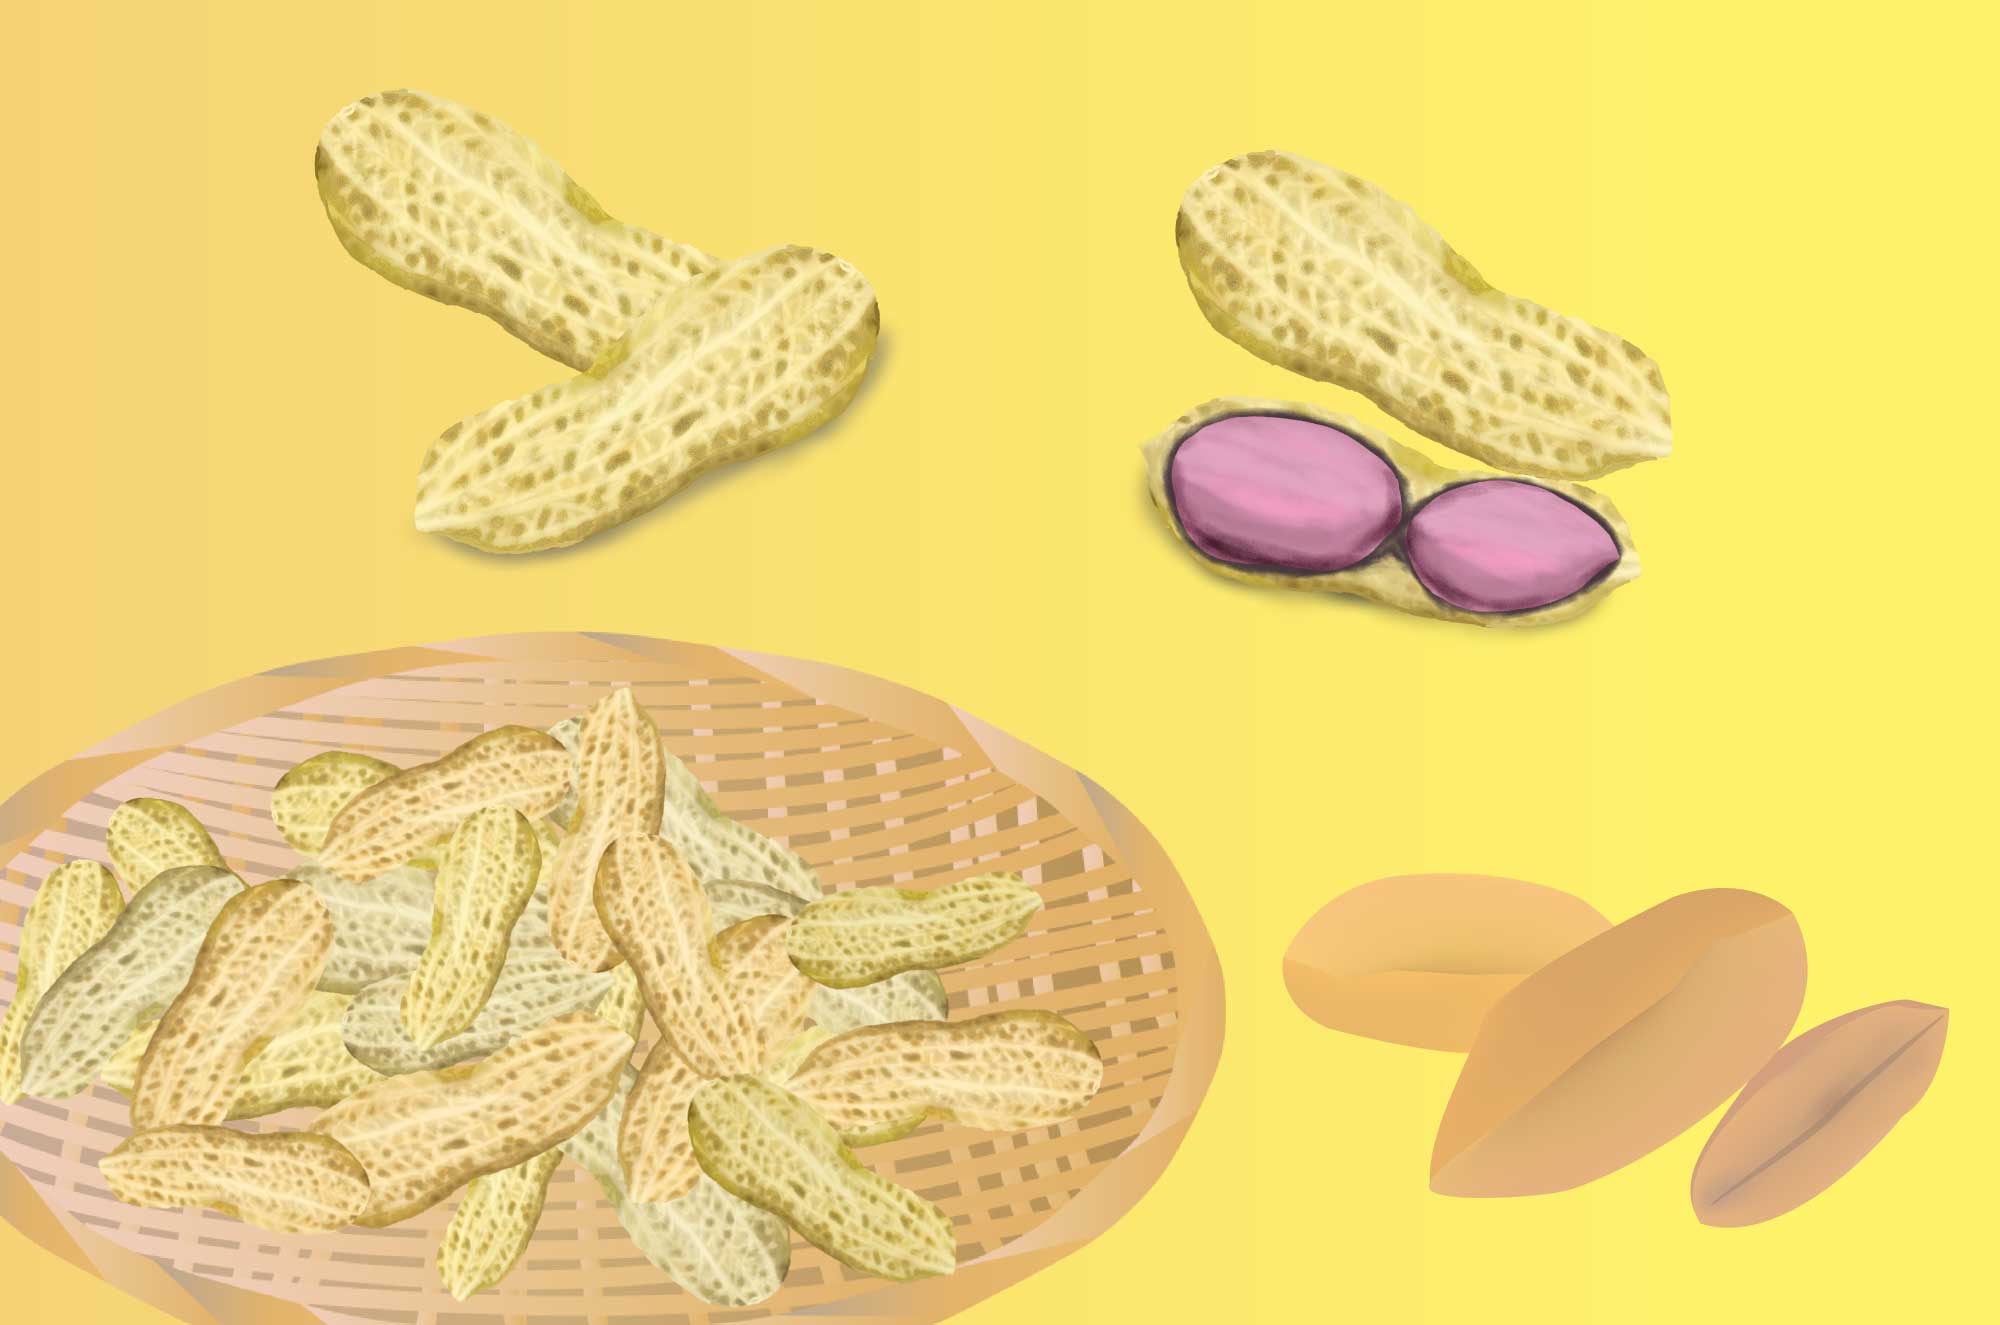 落花生の無料イラスト - ピーナッツ殻付き豆の素材